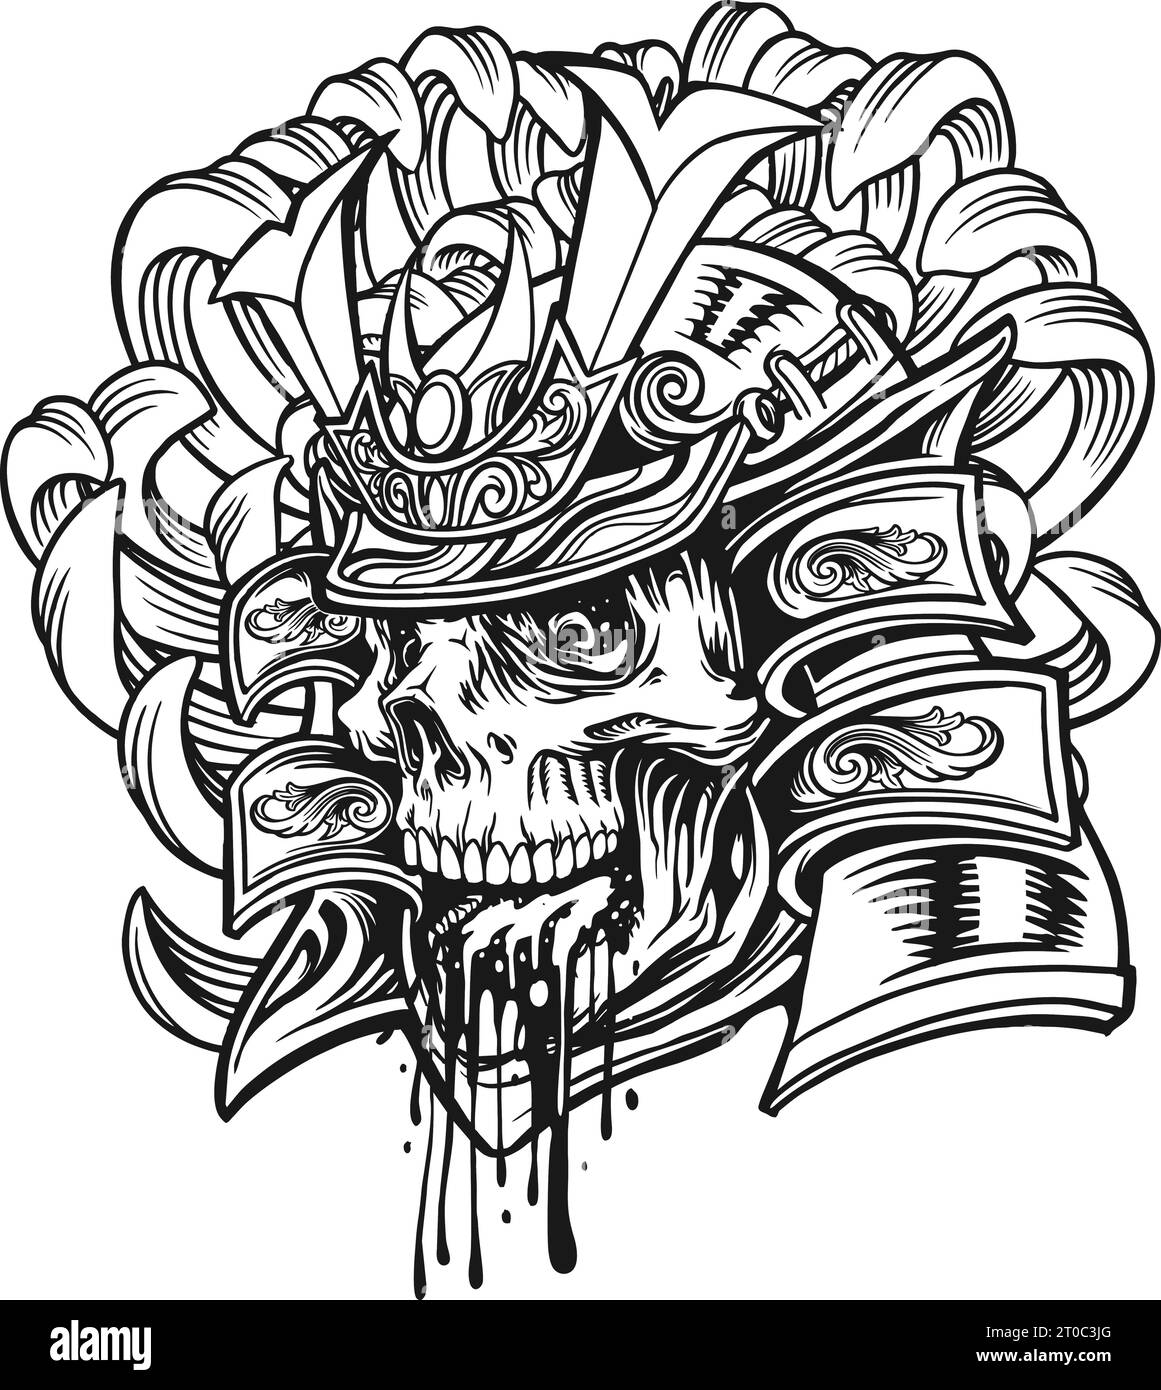 Monster skull samurai ornate warrior helmet outline vector illustrations for your work logo, merchandise t-shirt, stickers and label designs, poster, Stock Vector